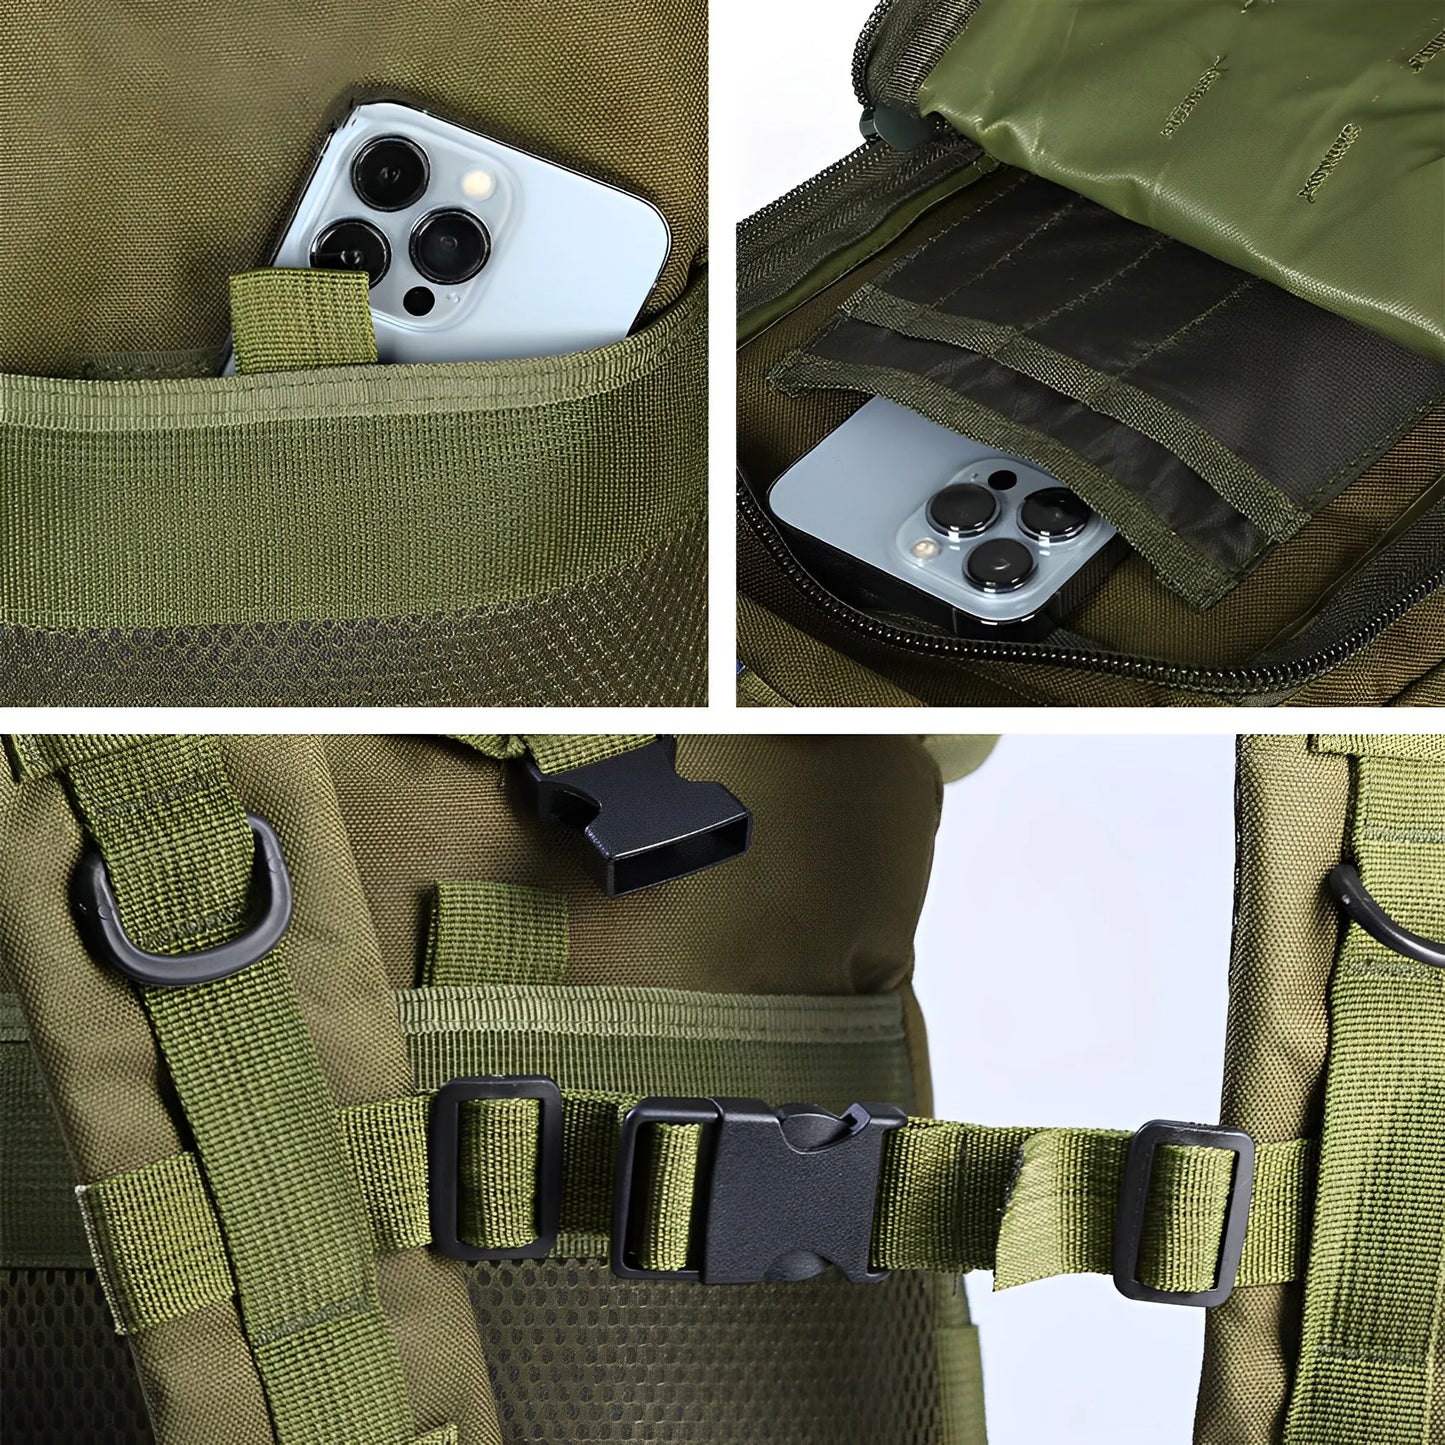 SYZM 50L alebo 30L taktické batohové tašky Army Hunting Molle Batoh pre mužov Vonkajšie turistické rybárske tašky